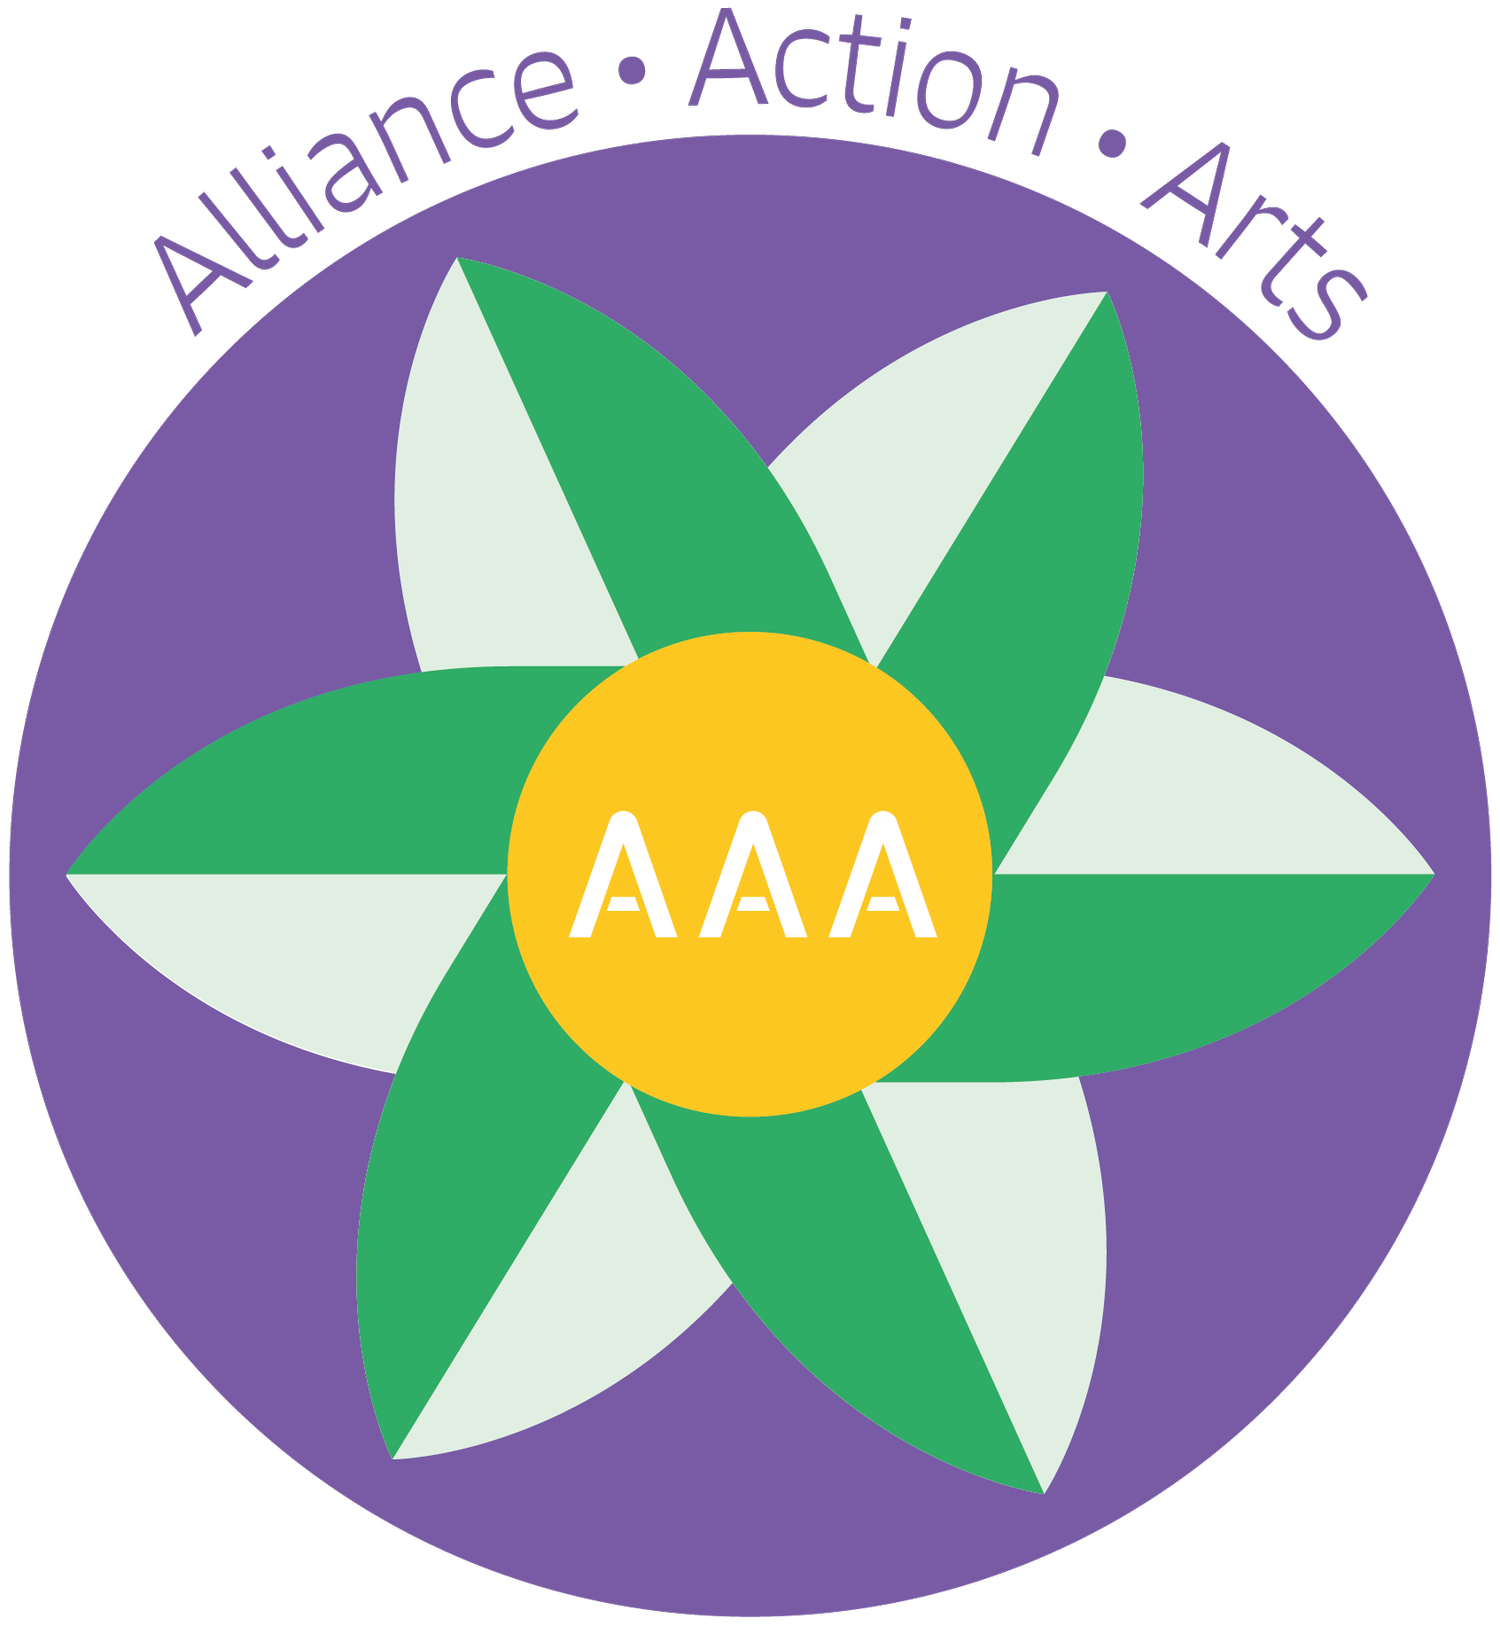 Alliance Action Arts